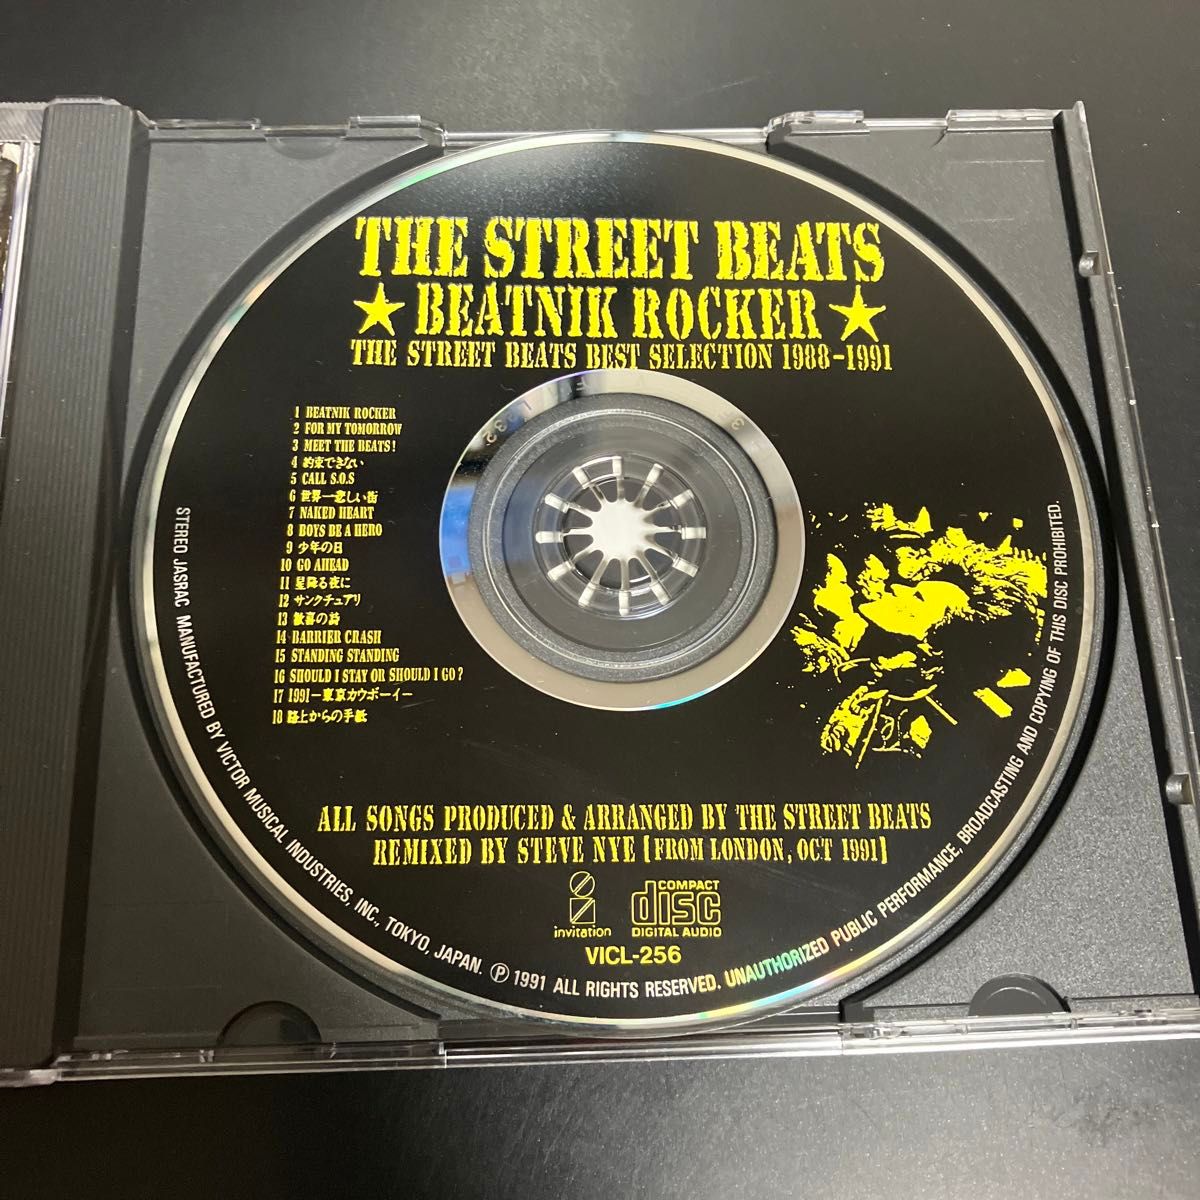 ★CD「THE STREET BEATS/ビートニック・ロッカー～ザ・ストリート・ビーツ・ベスト・セレクション1988-1991」